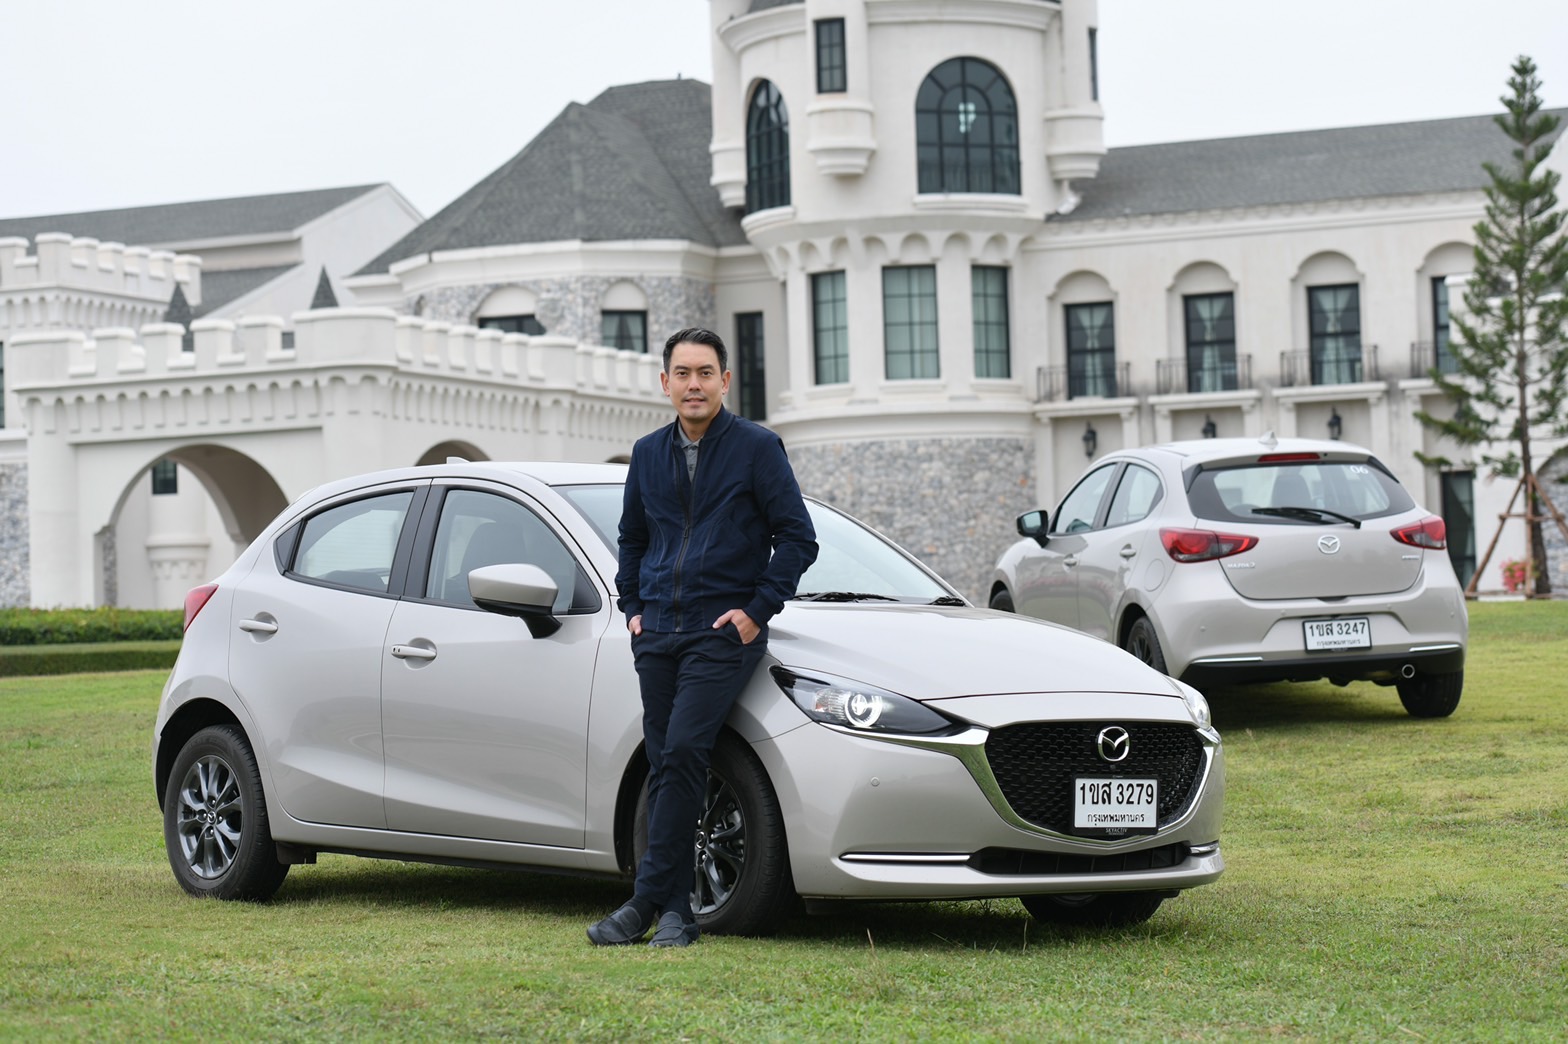 มาสด้าชวนลูกค้าส่งภาพความประทับใจกับรถมาสด้า แชร์ประสบการณ์ความสุข 'You and Mazda Moments'